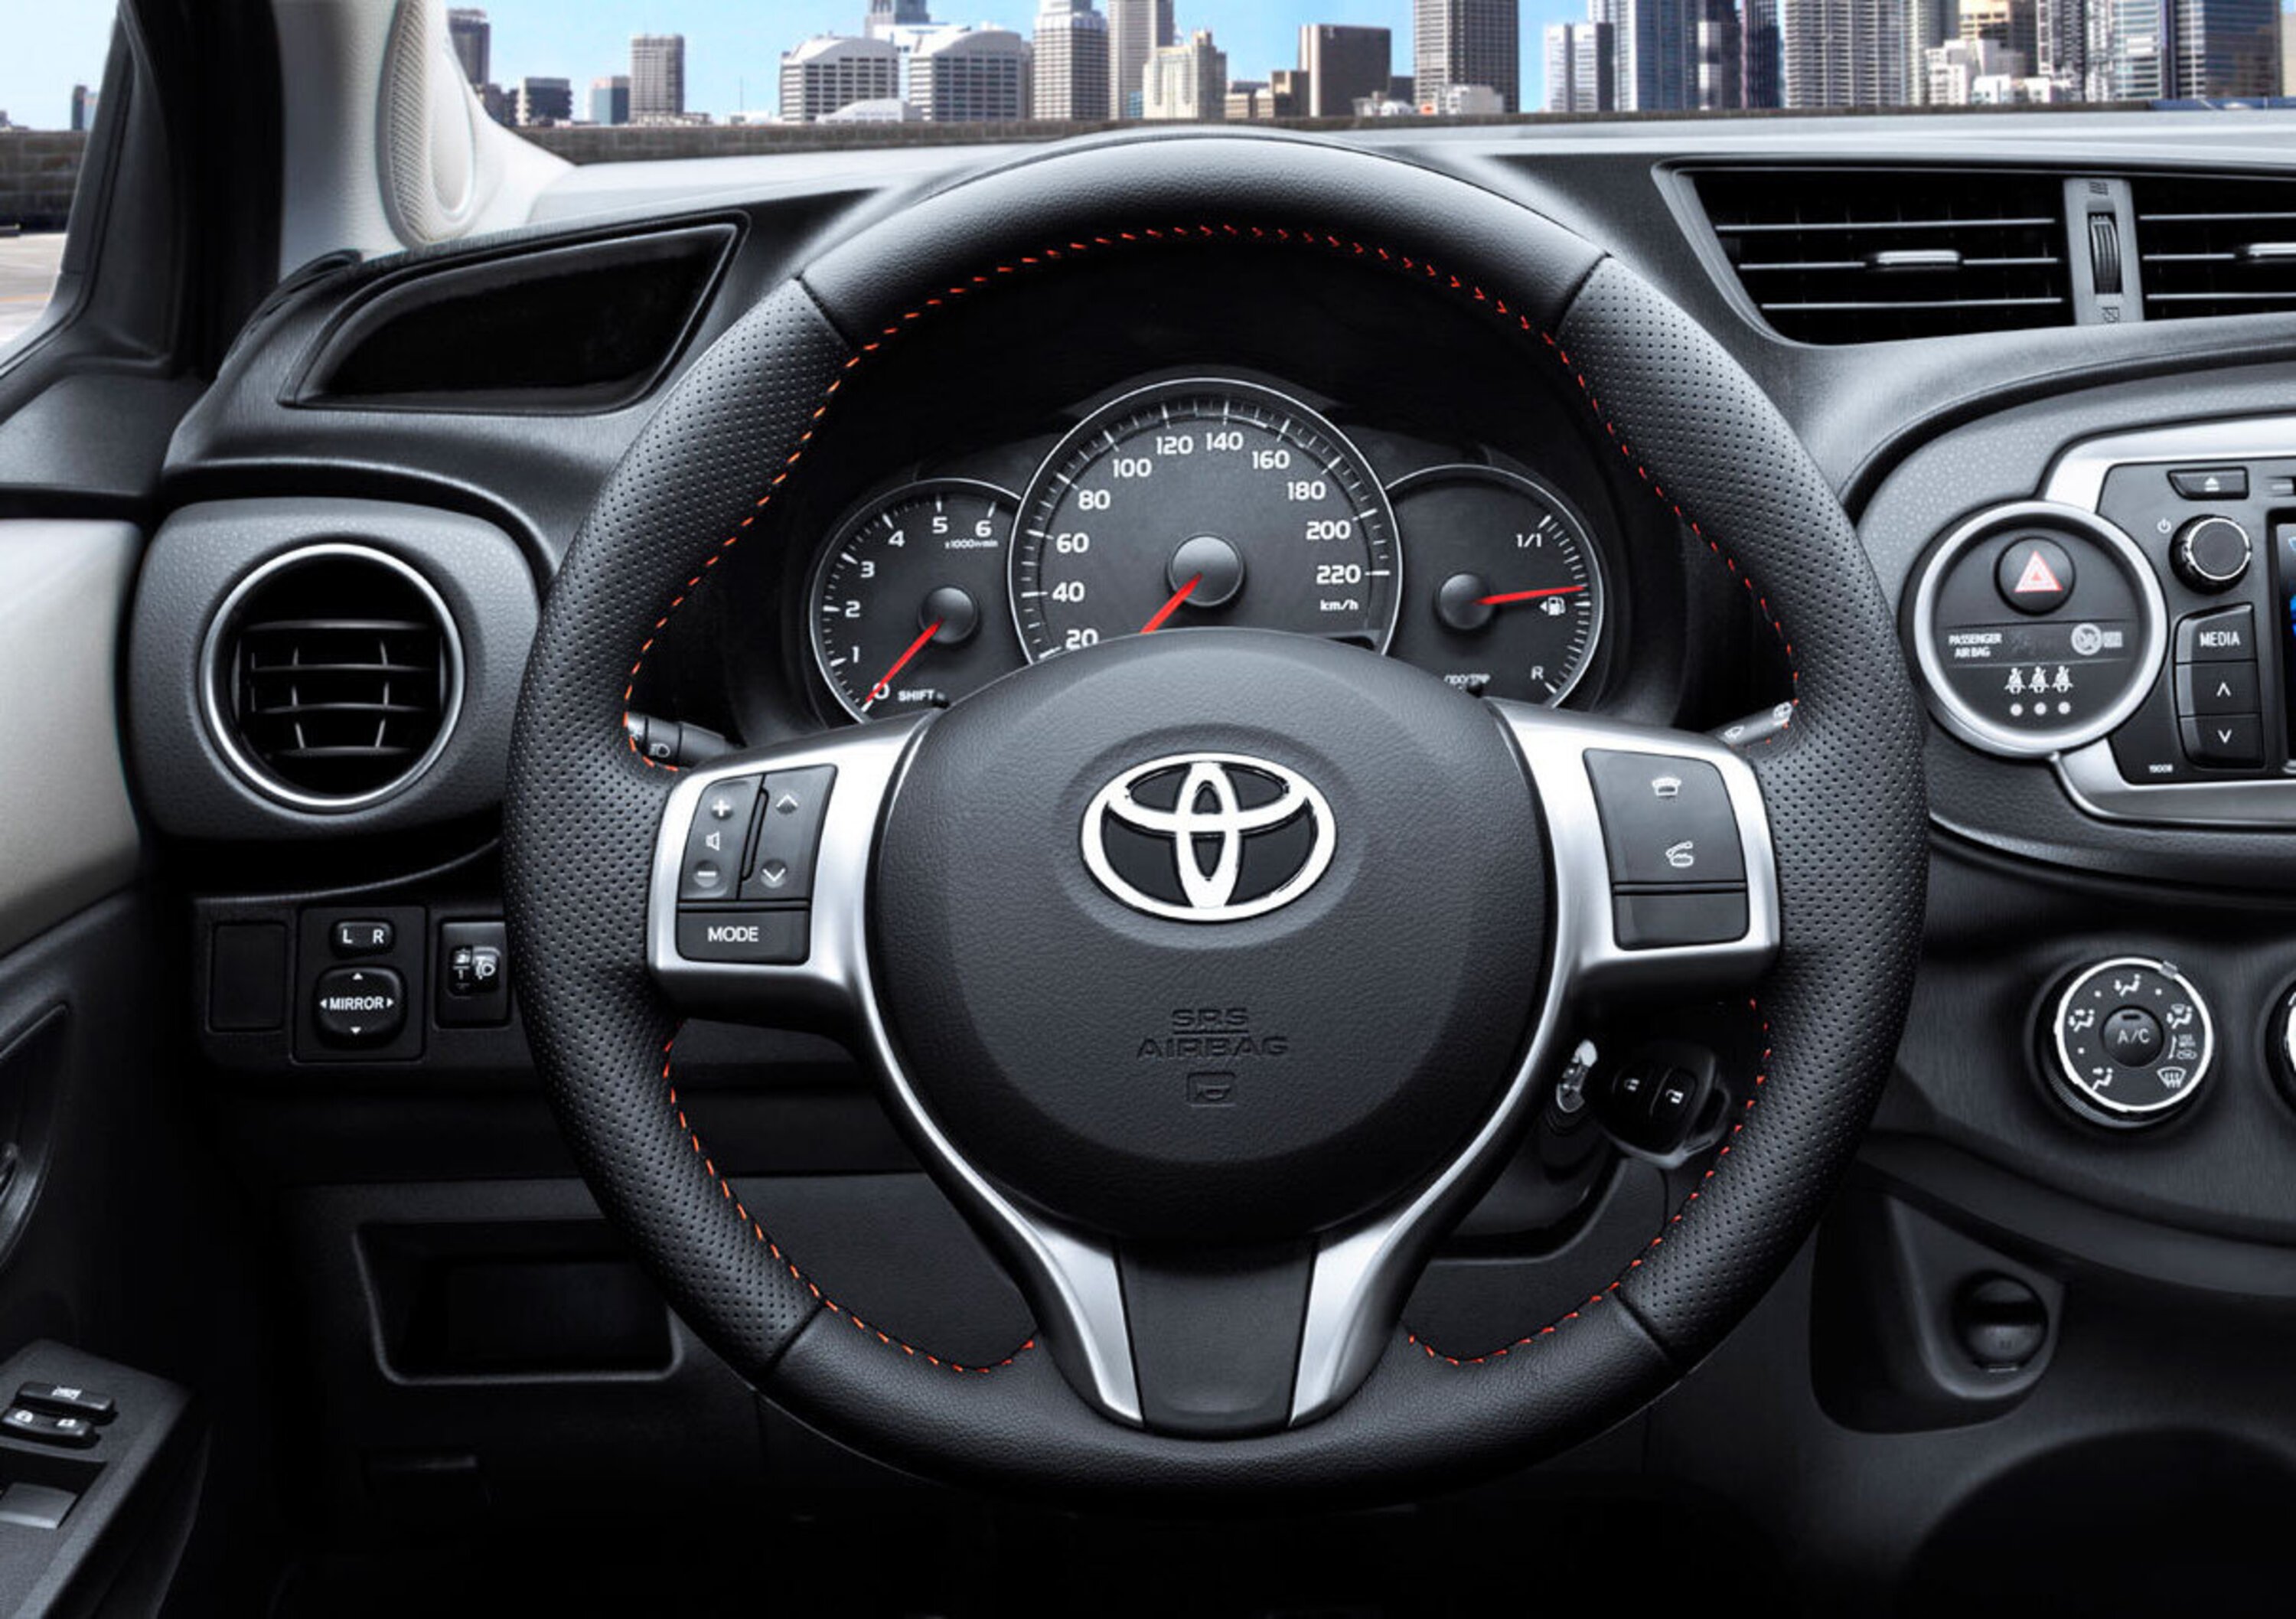 Toyota annuncia 21 progetti di tutela ambientale